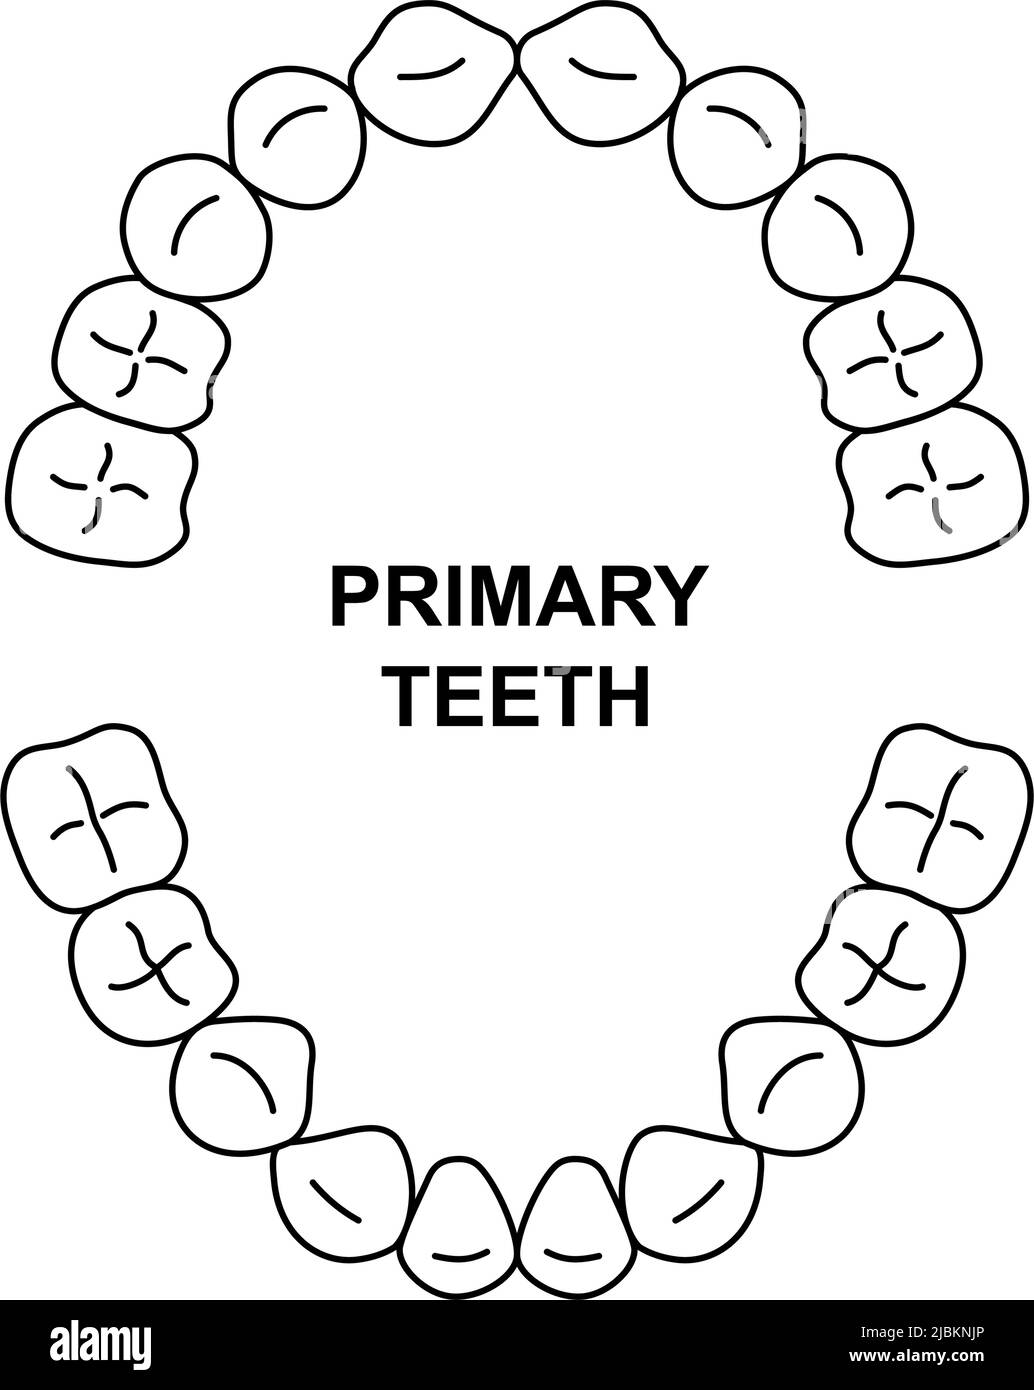 Anatomie de dentition des dents primaires. Mâchoire supérieure et inférieure enfant. Tableau d'arrivée des dents pour enfants. Silhouette des dents primaires Illustration de Vecteur